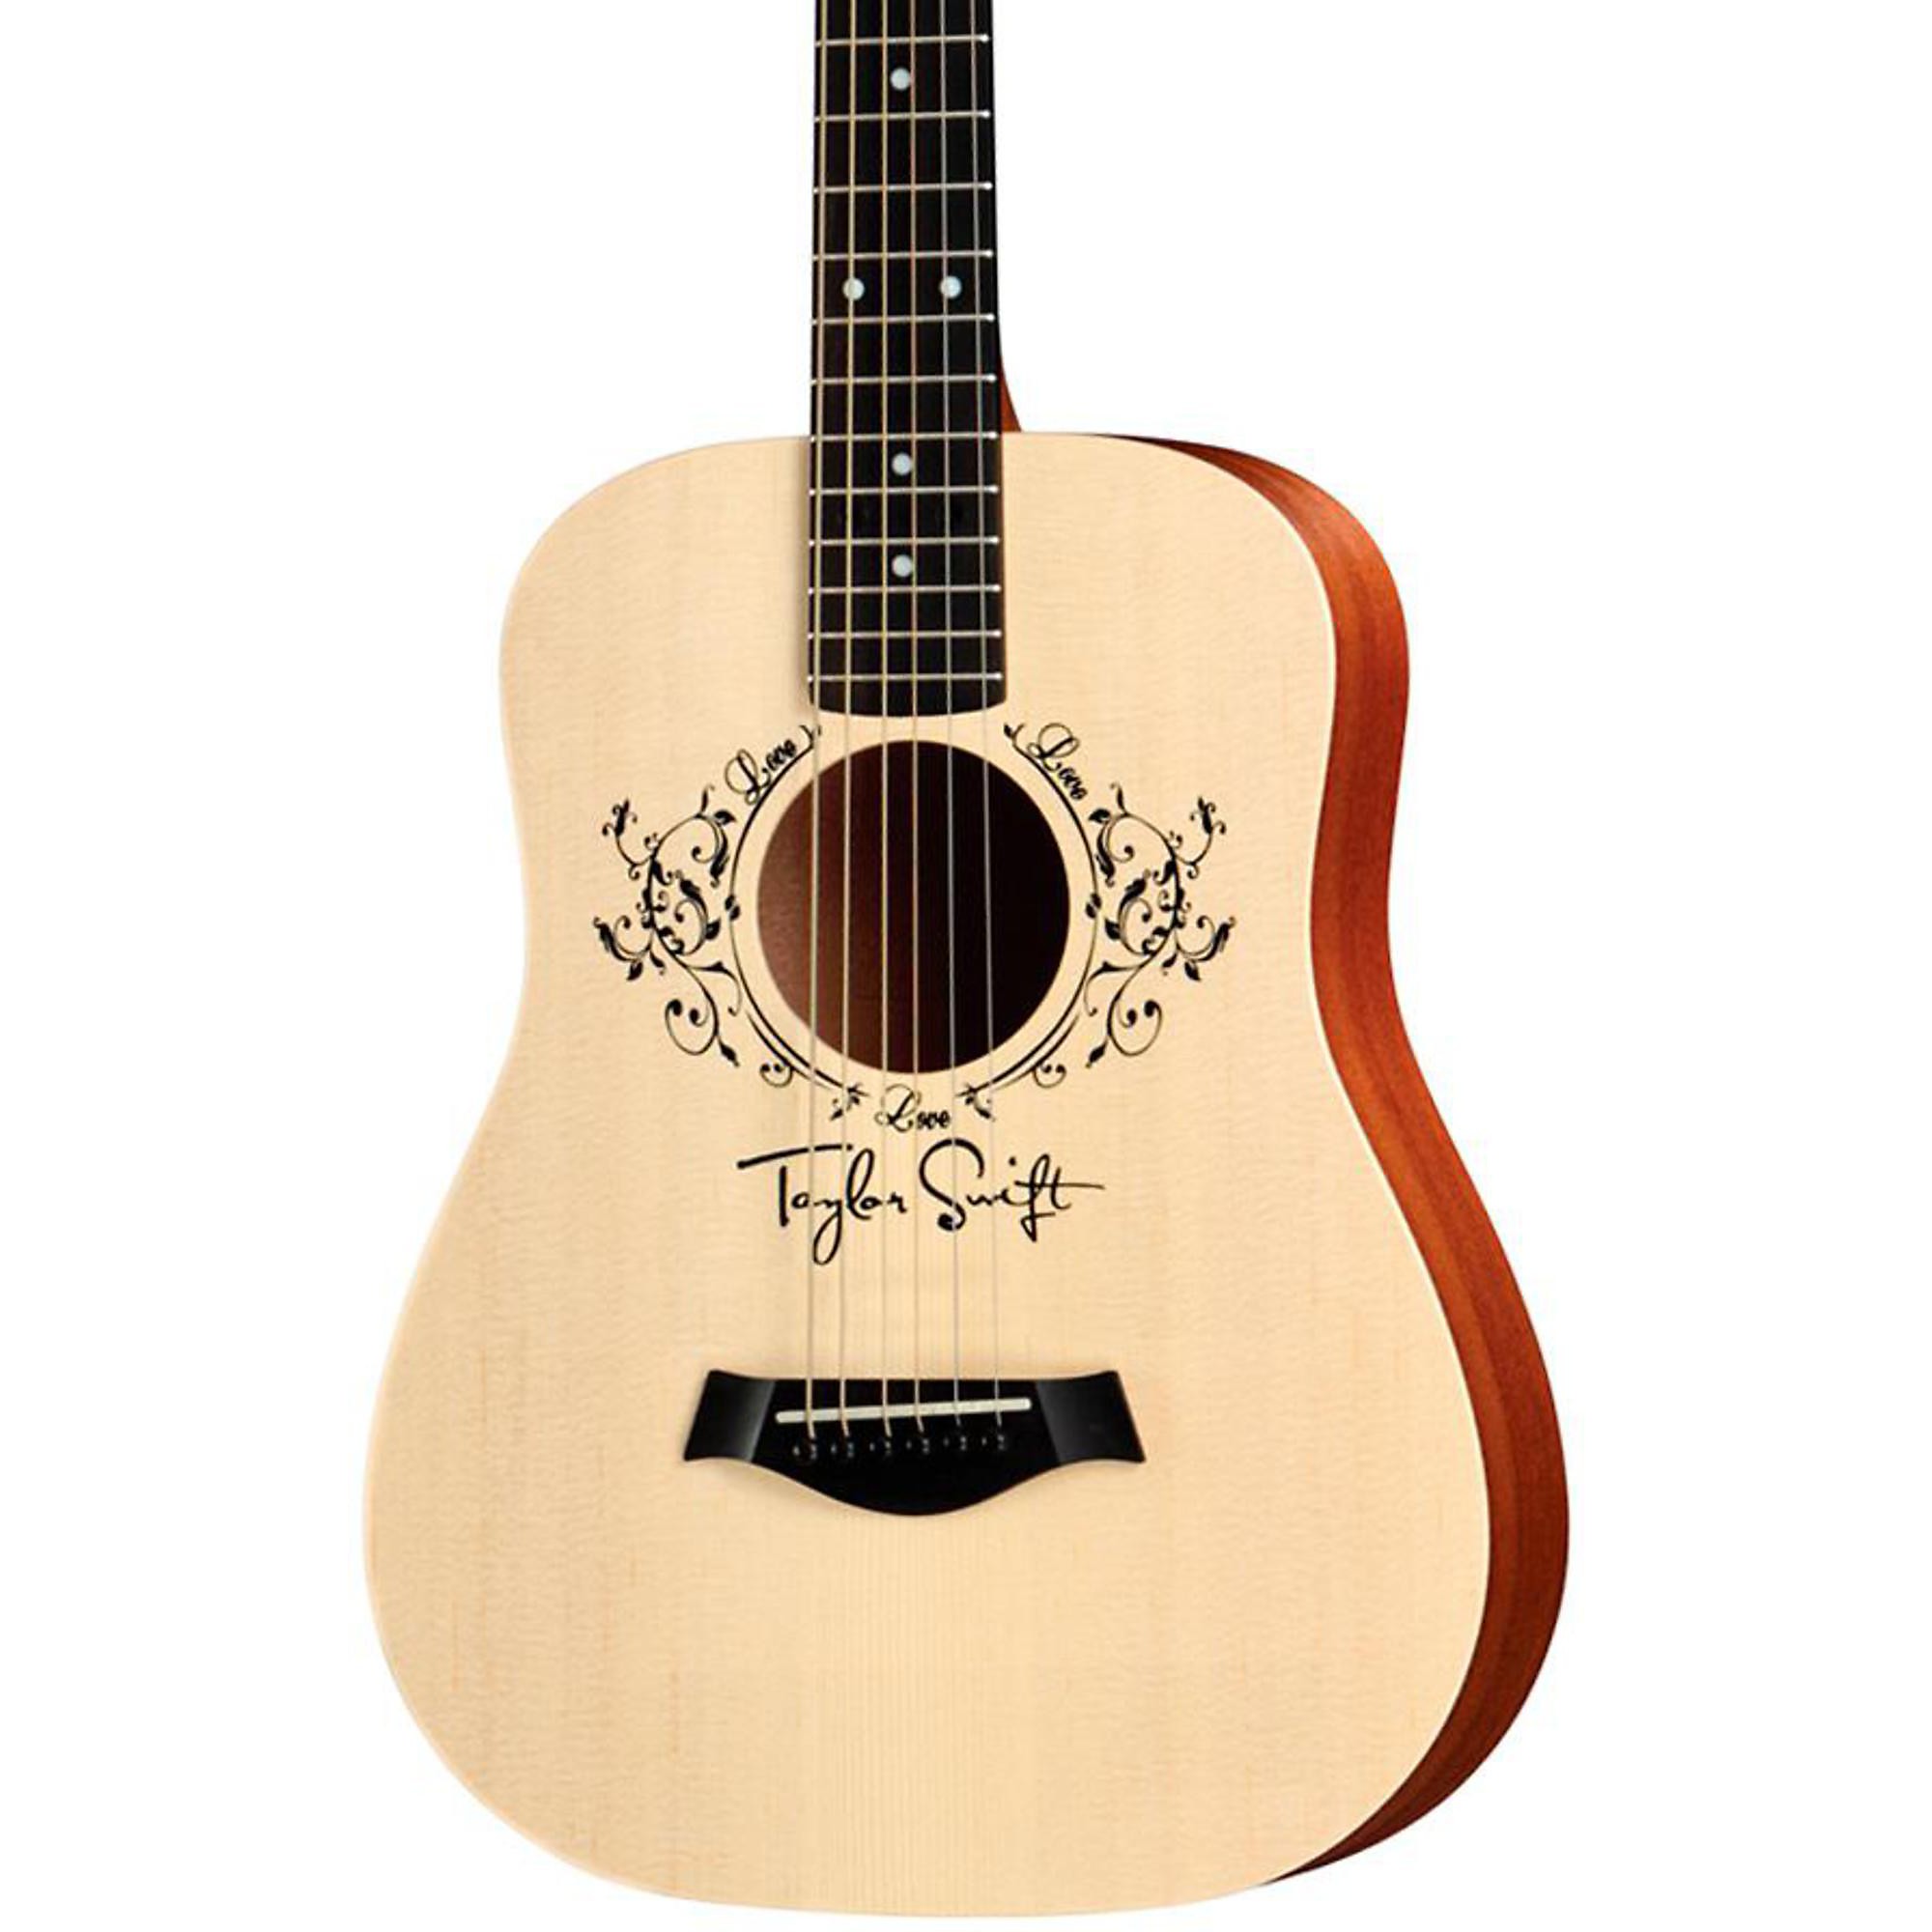 Акустическая гитара Taylor Taylor Swift Signature Baby, размер 3/4, дредноут акустическая гитара taylor taylor swift baby taylor